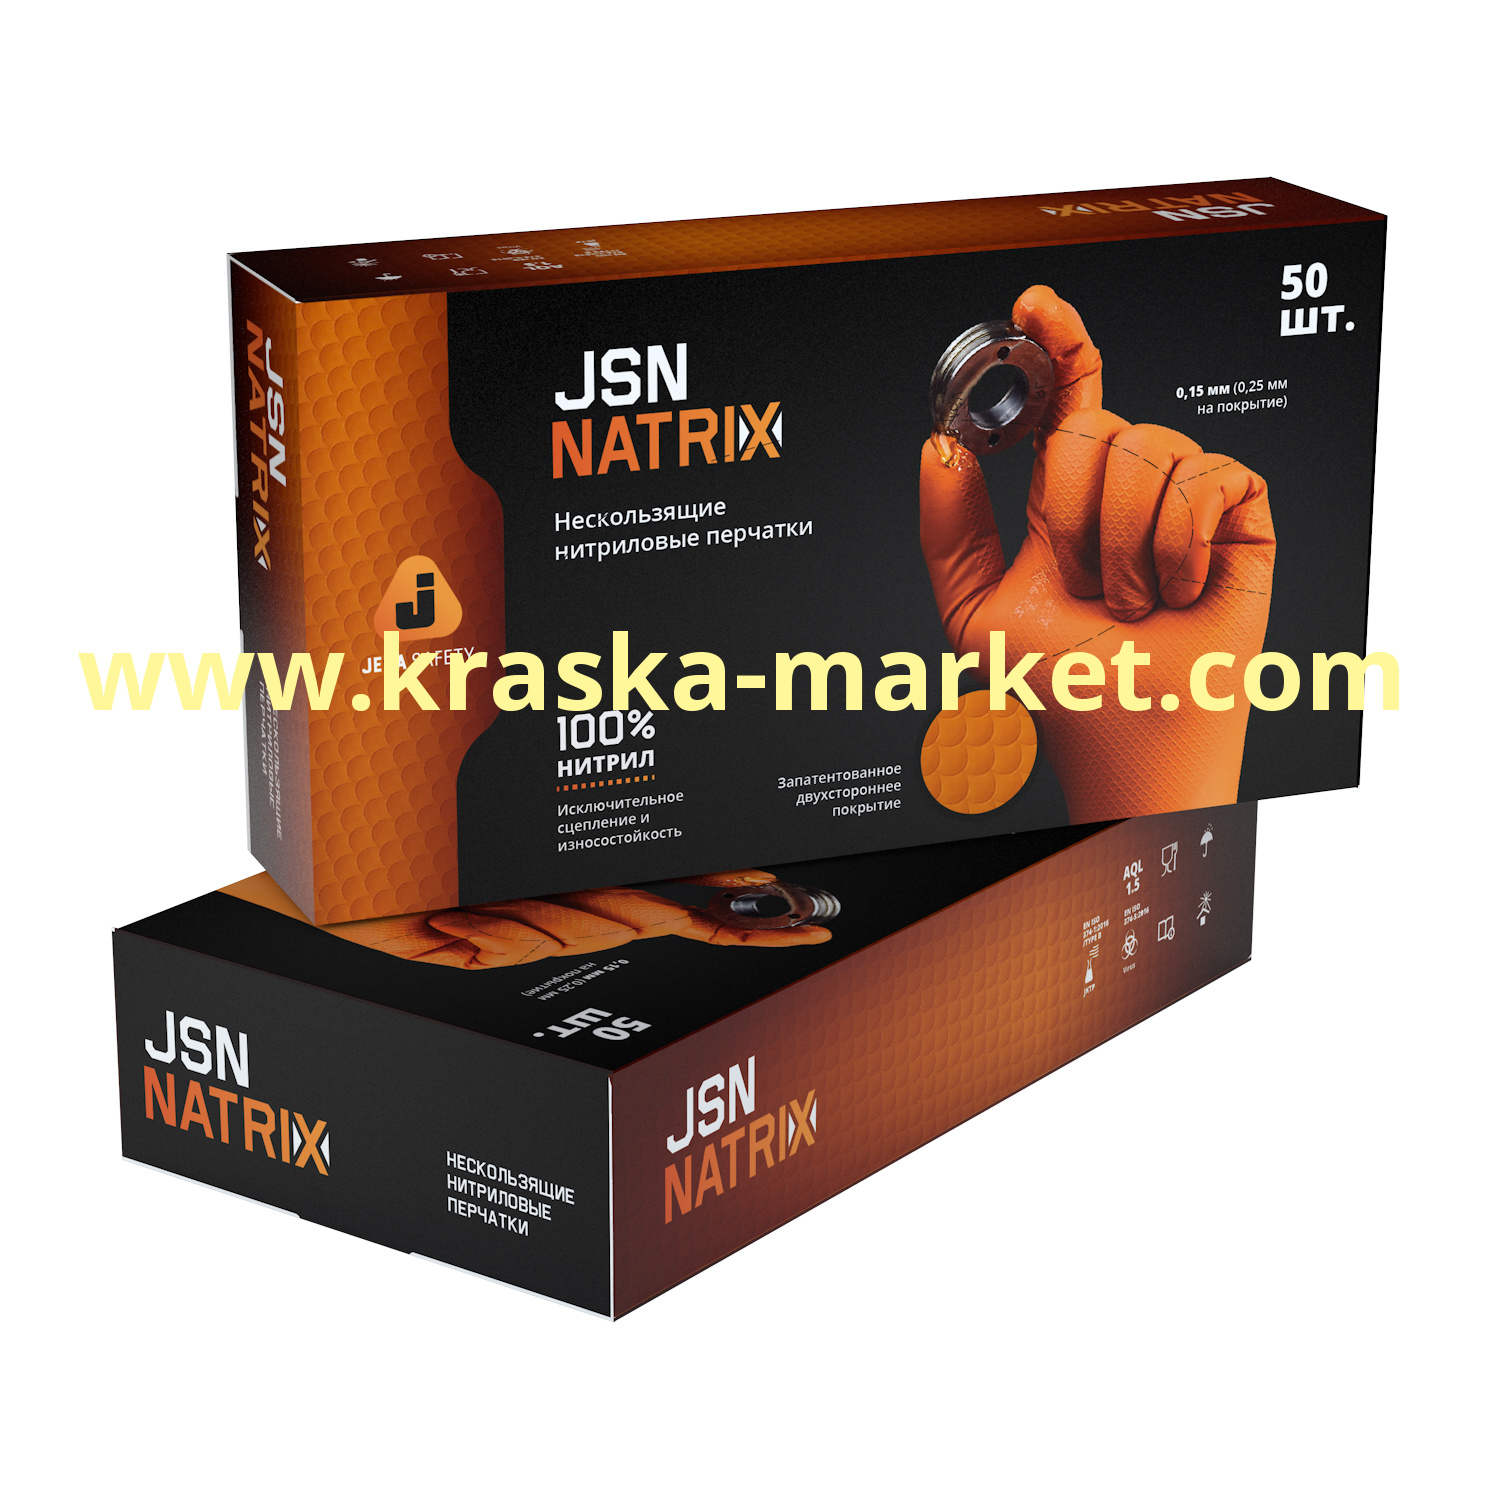 Перчатки нитриловые износостойкие оранжевые для малярных работ JSN NATRIX. Размер: S. Упаковка: 50 штук (25 пар). Состав: 100% нитрил. Торговая марка: JetaPro.